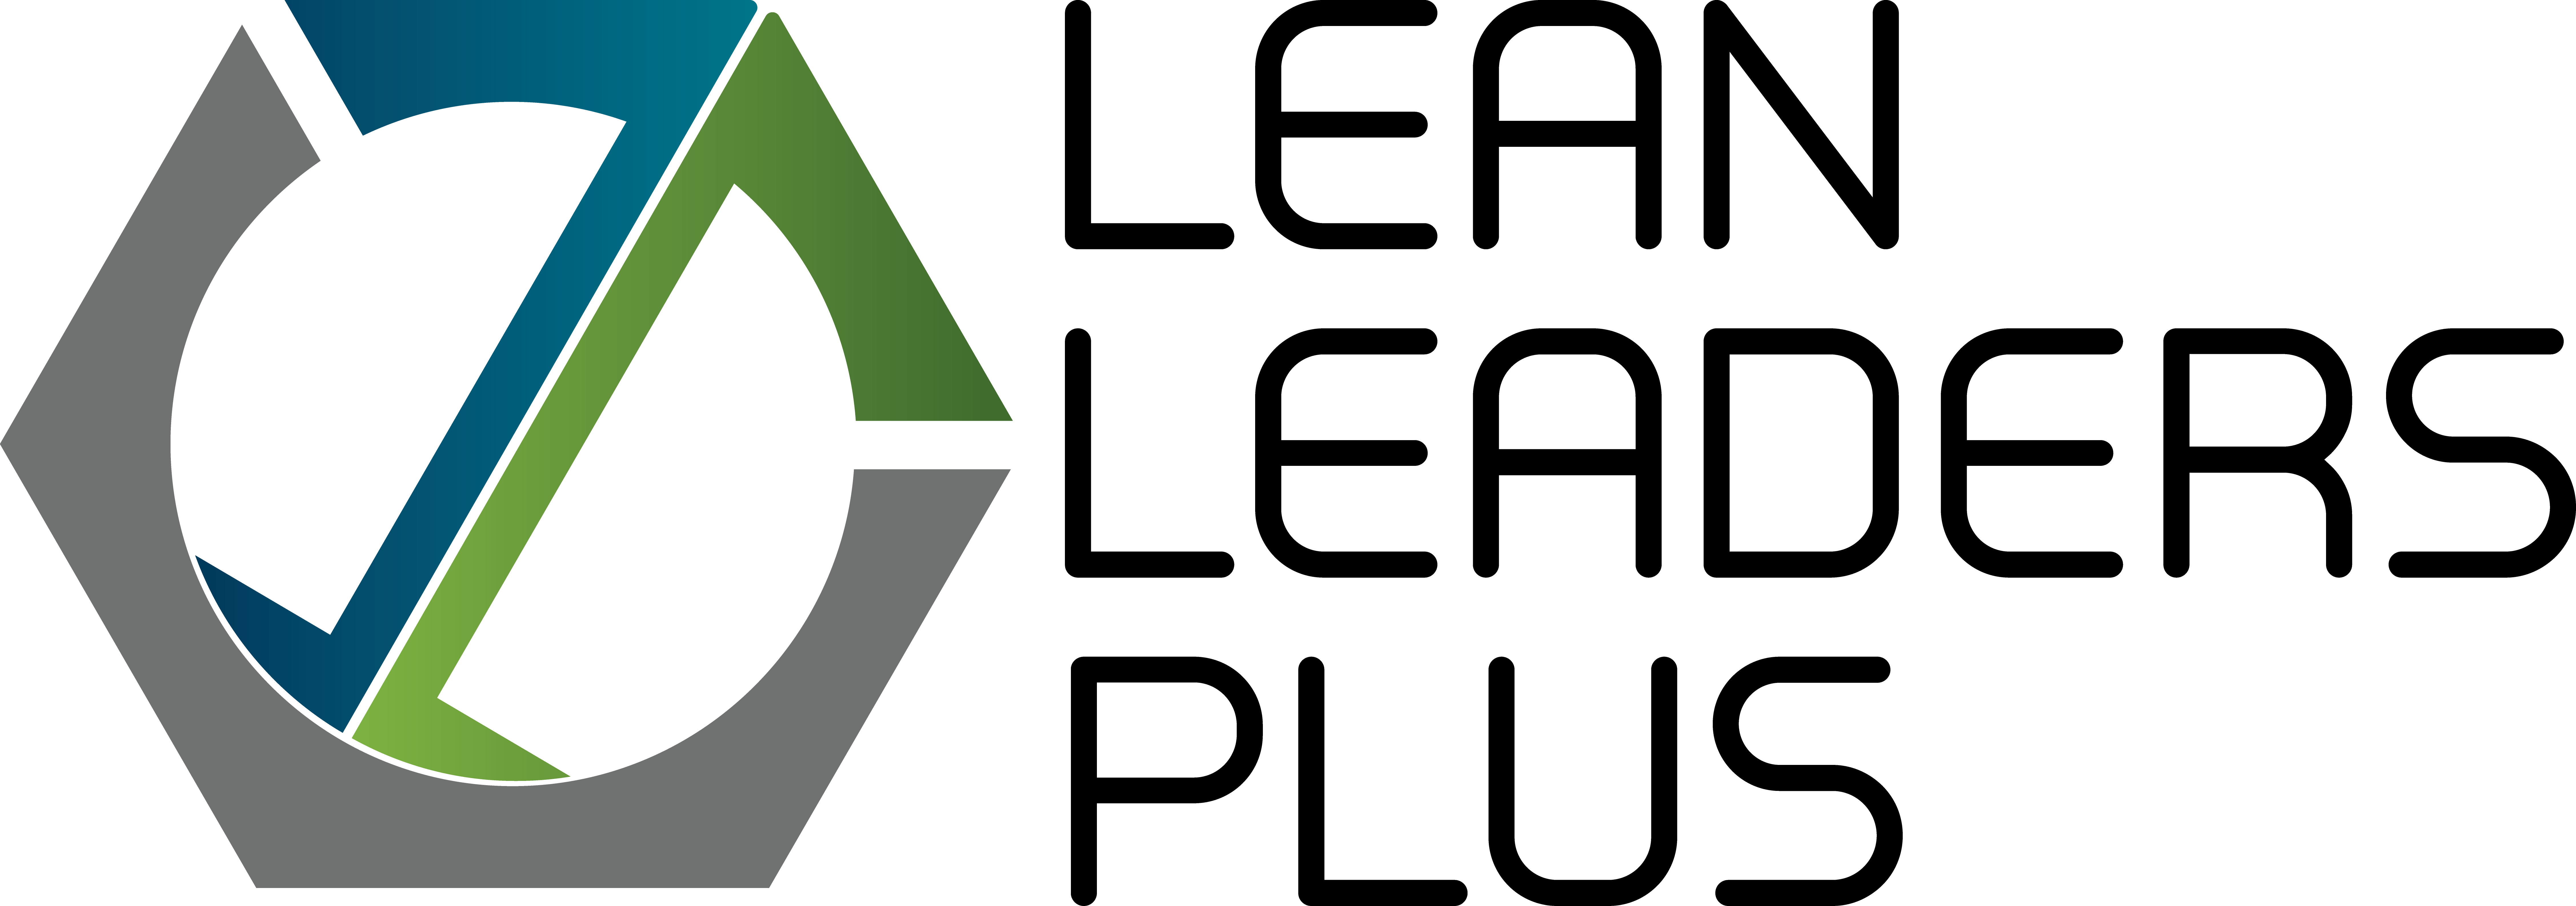 LeanLeadersPlus